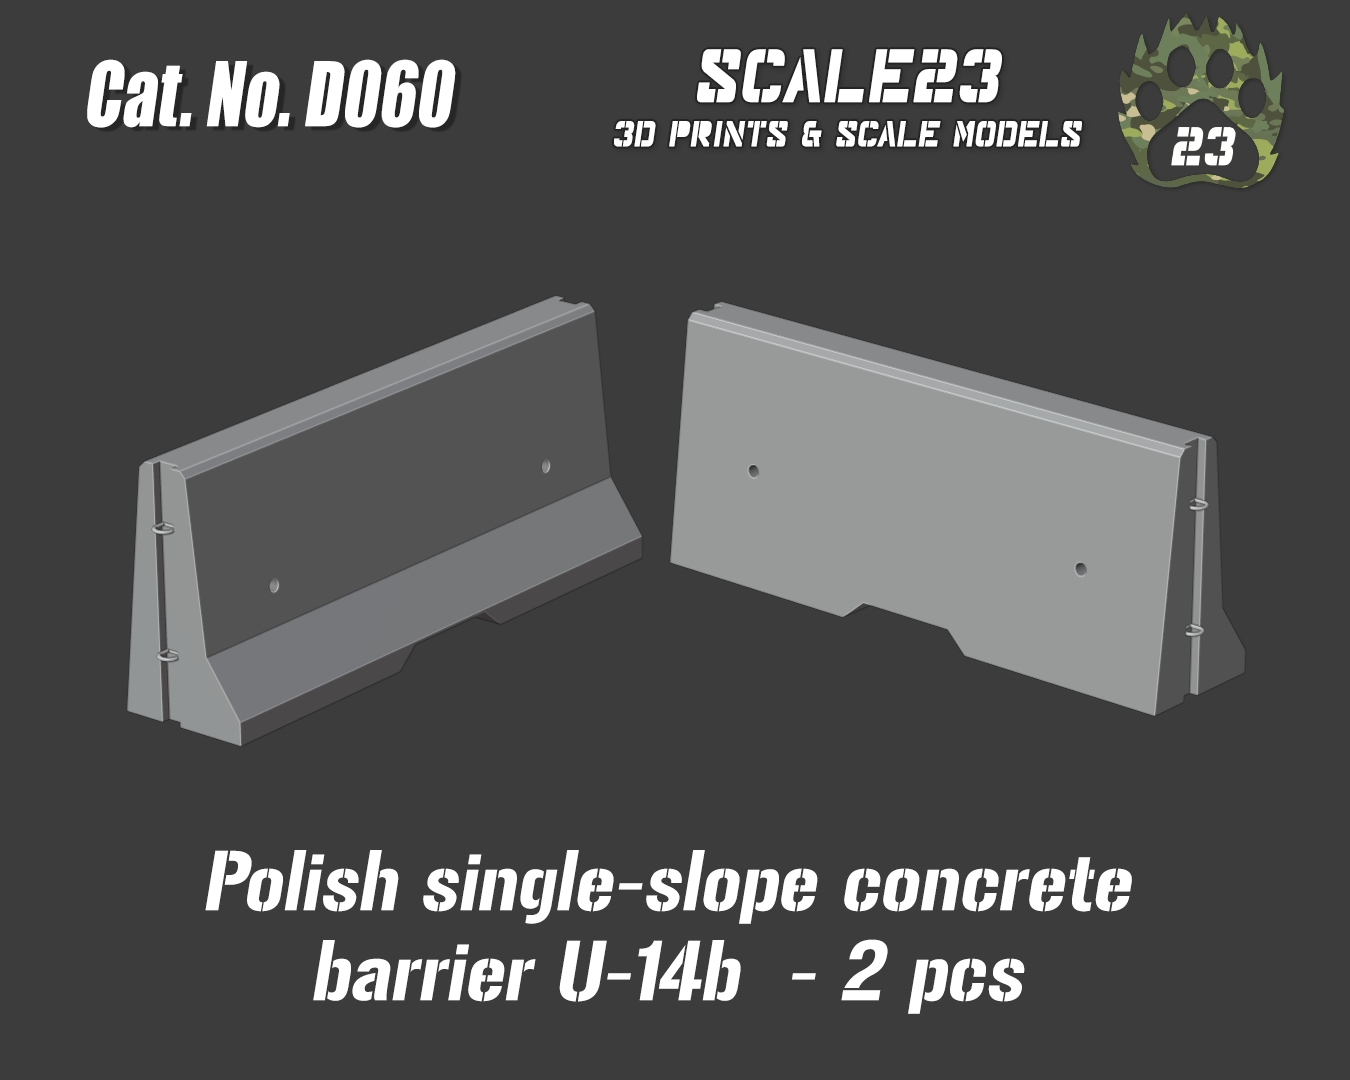 Polish concrete barrier - single-slope (2pc)